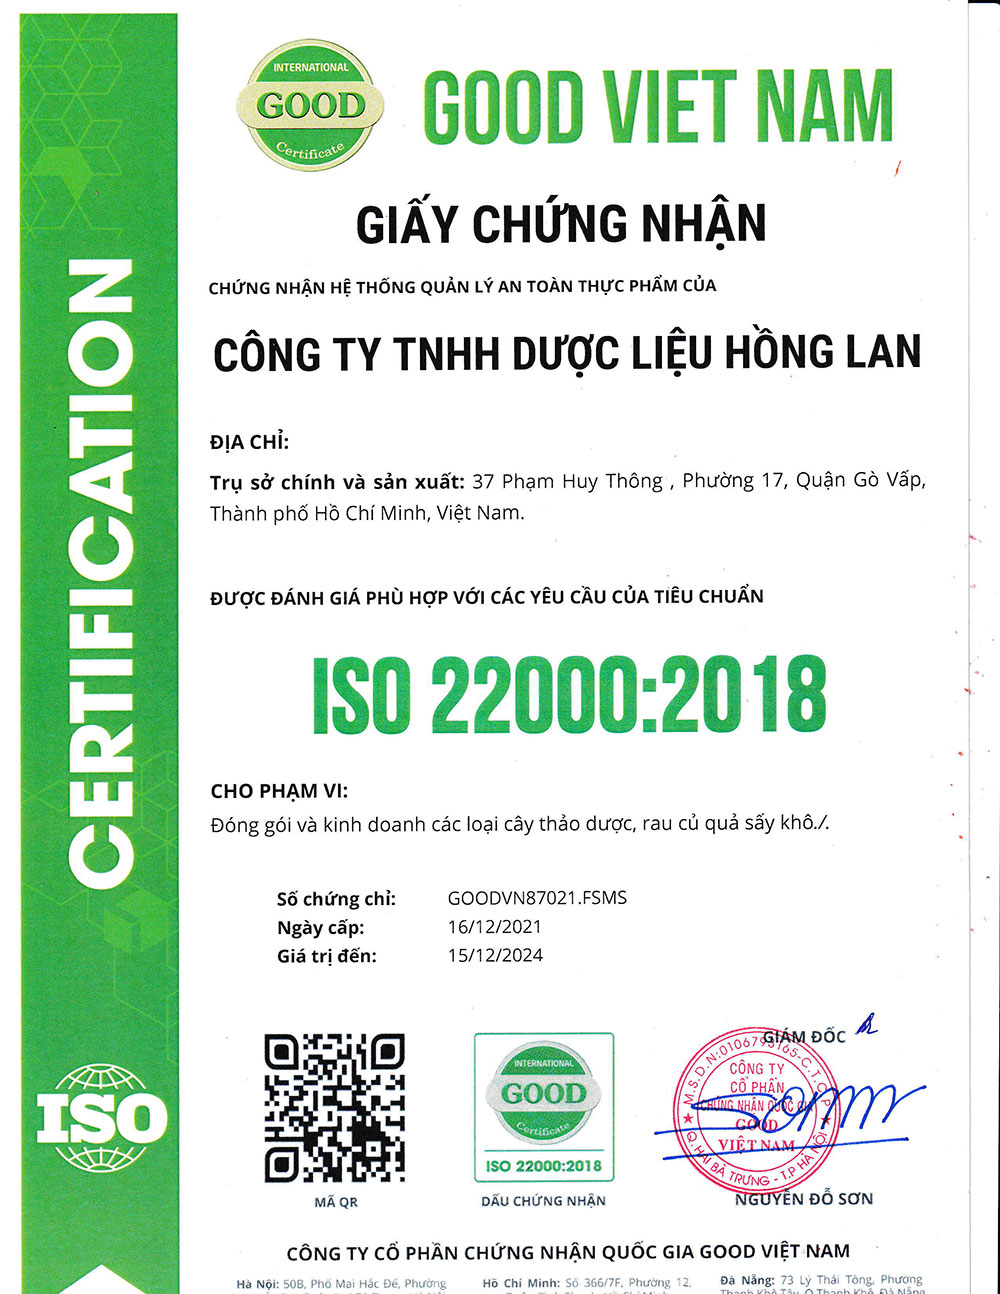 Trà Lá Vối dạng túi lọc được sản xuất theo hệ thống quản lý an toàn thực phẩm ISO 22000:2018 được cấp bởi công ty cổ phần chứng nhận Quốc Gia Good Việt Nam (Good Viet Nam Certification Joint Stock Company)